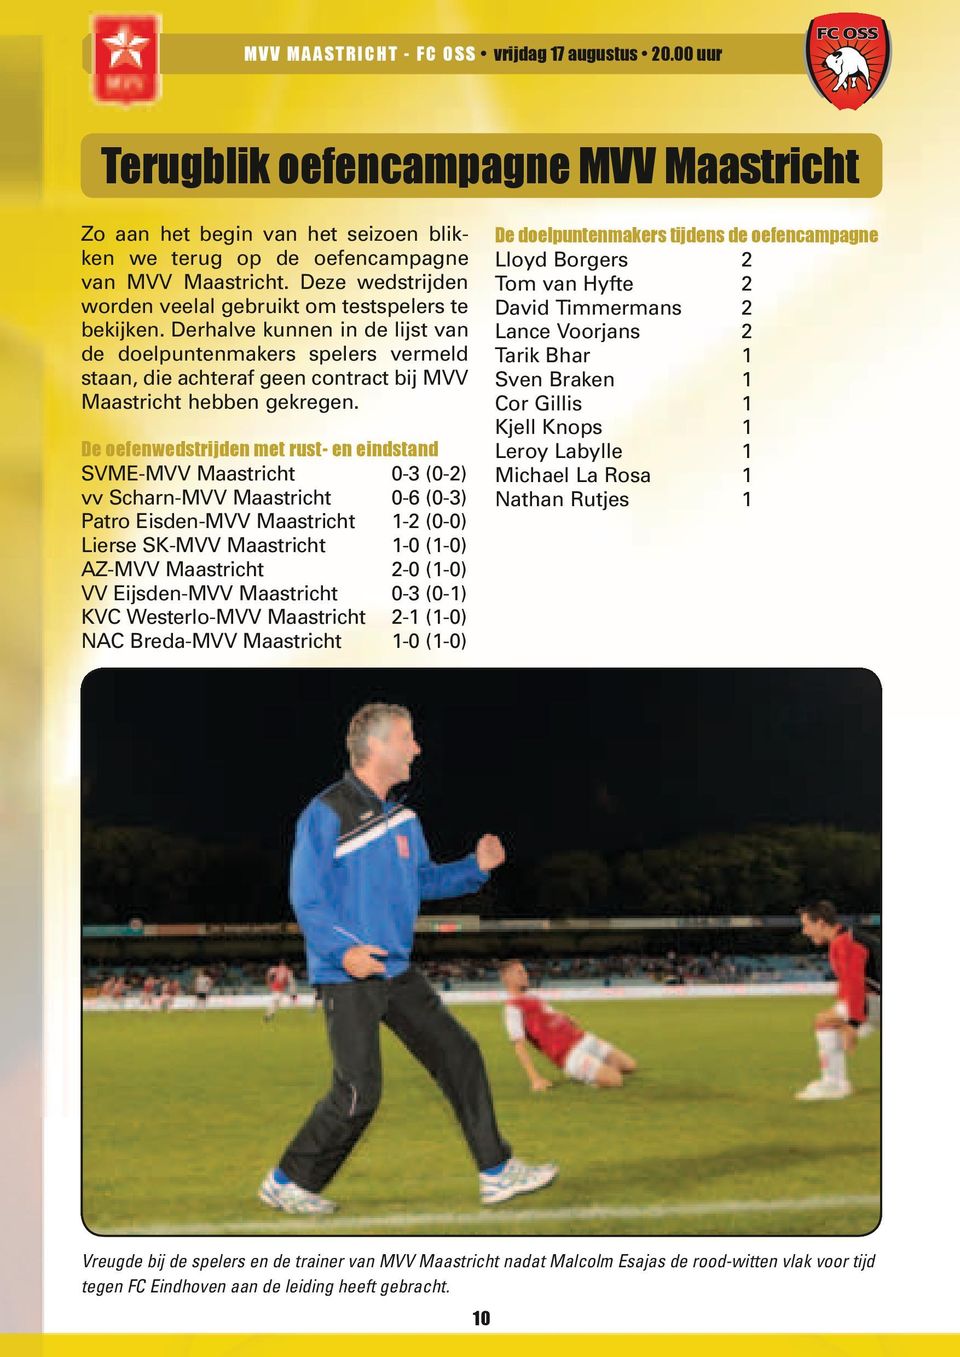 Derhalve kunnen in de lijst van de doelpuntenmakers spelers vermeld staan, die achteraf geen contract bij MVV Maastricht hebben gekregen.